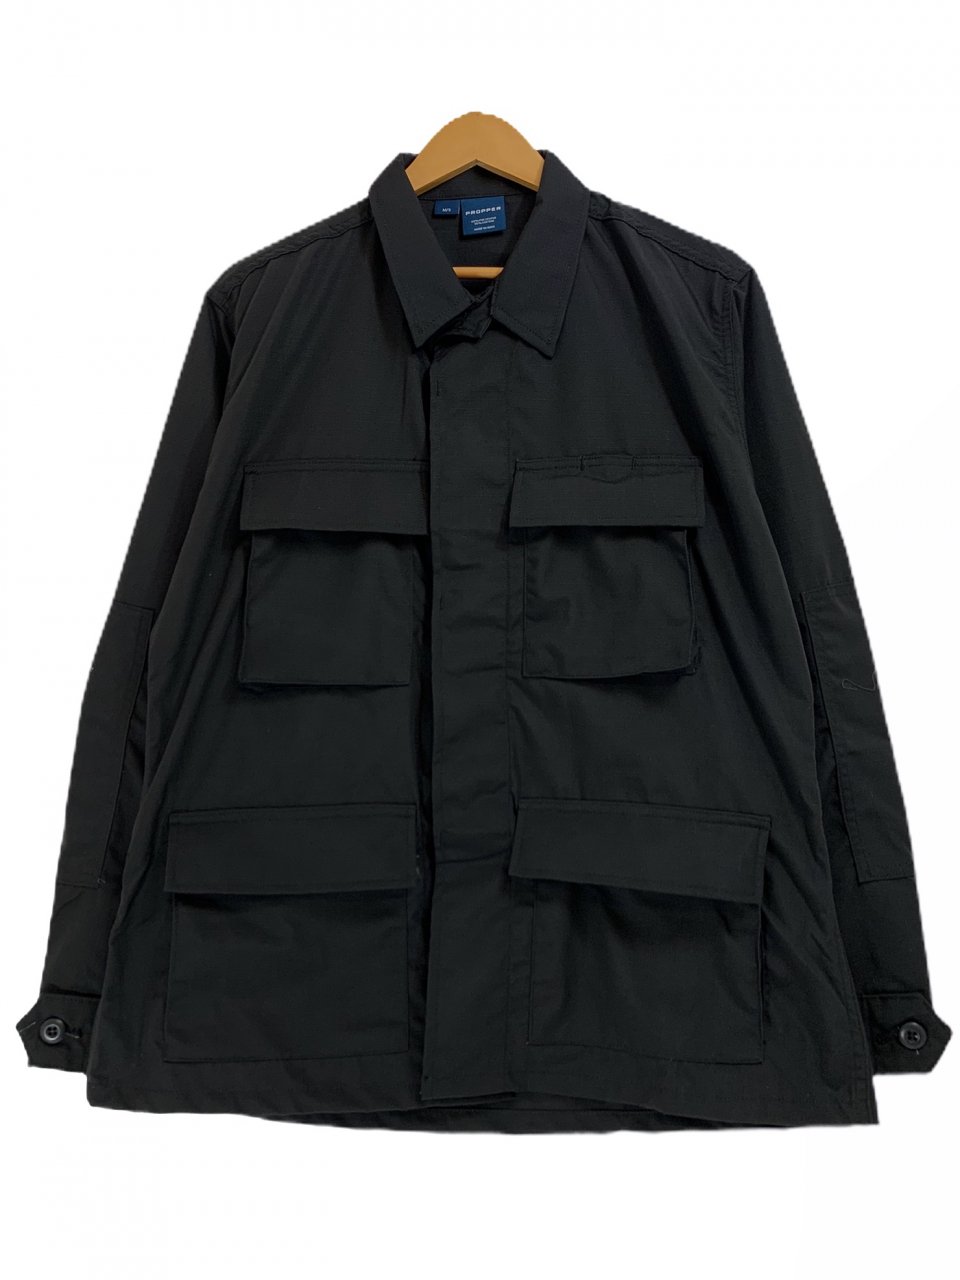 新品 PROPPER BDU COAT (BLACK) プロッパー BDUジャケット コート 4ポケット リップストップ ミリタリー 黒 ブラック  F545438 - NEWJOKE ONLINE STORE